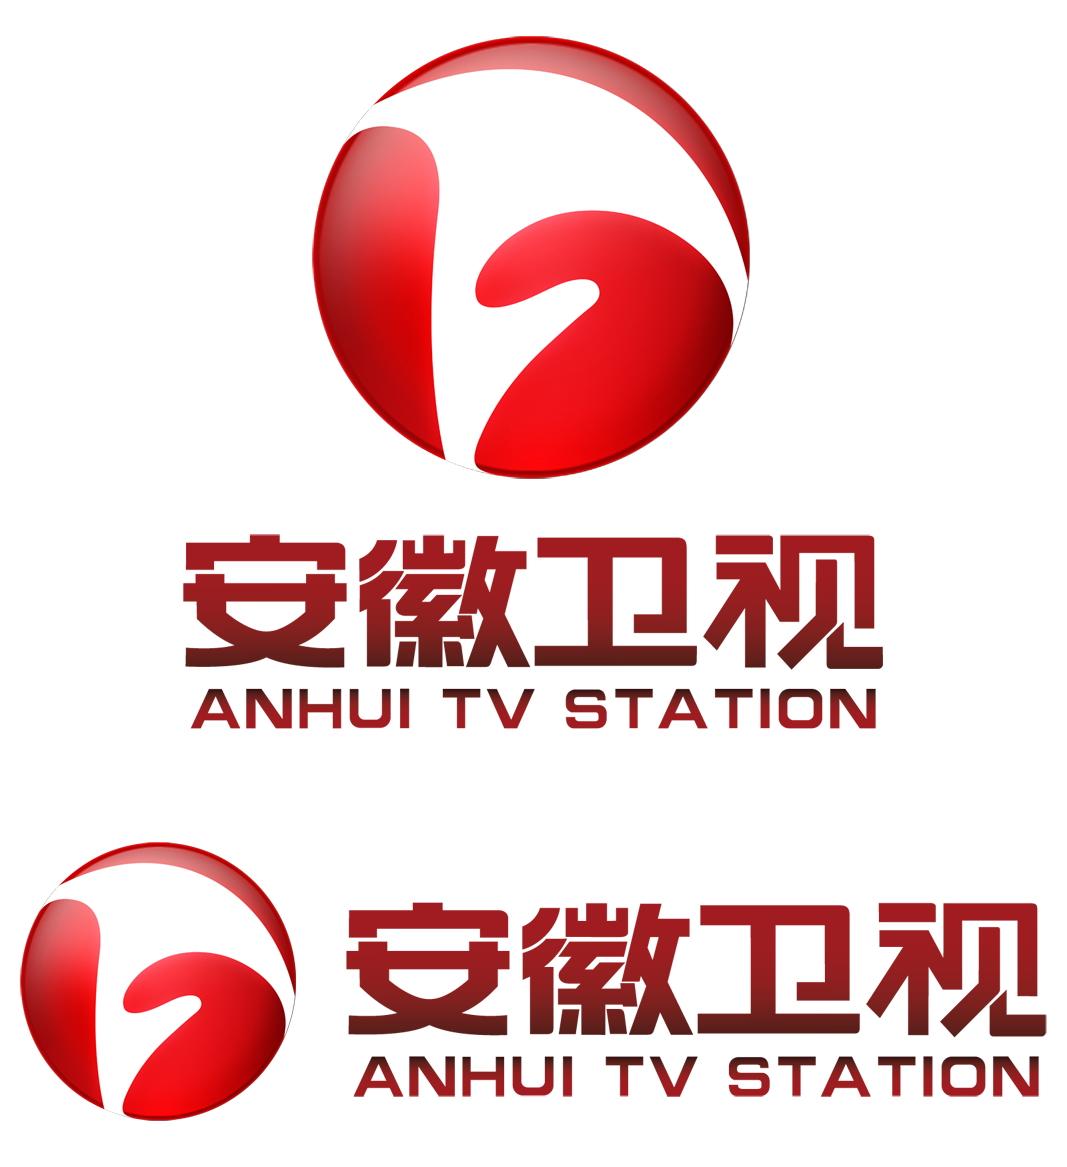 安徽广播电视台现有十二个频道,依次为卫星频道( 安徽卫视 ),经济生活